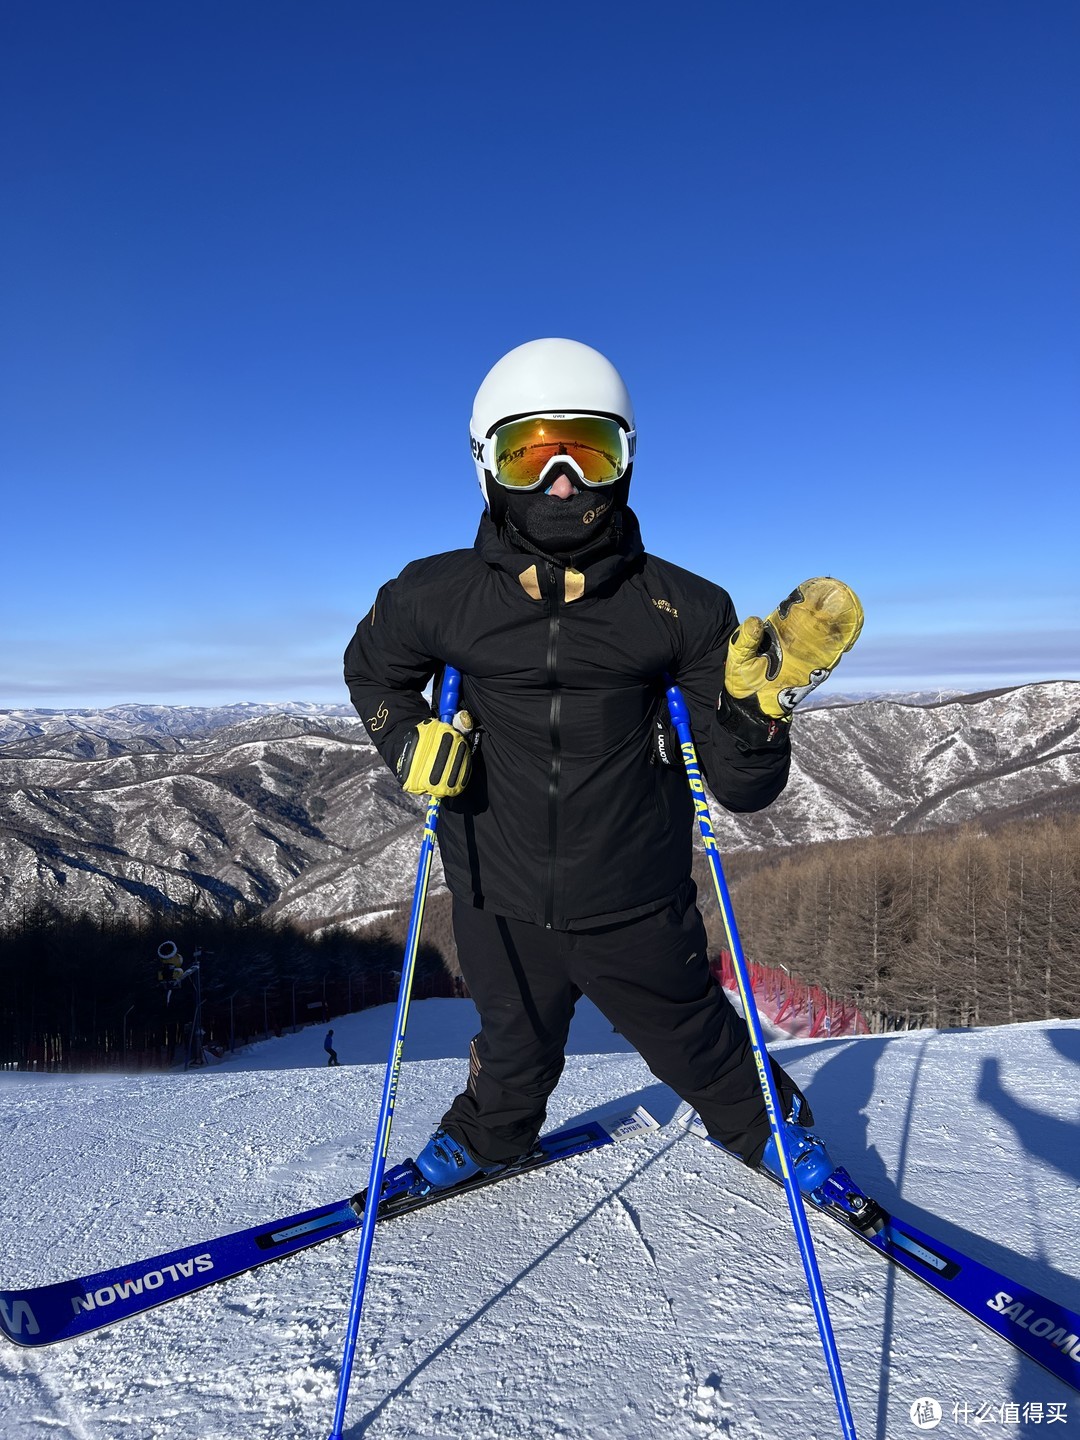 滑雪教练的uvex downhill2000滑雪眼镜评测